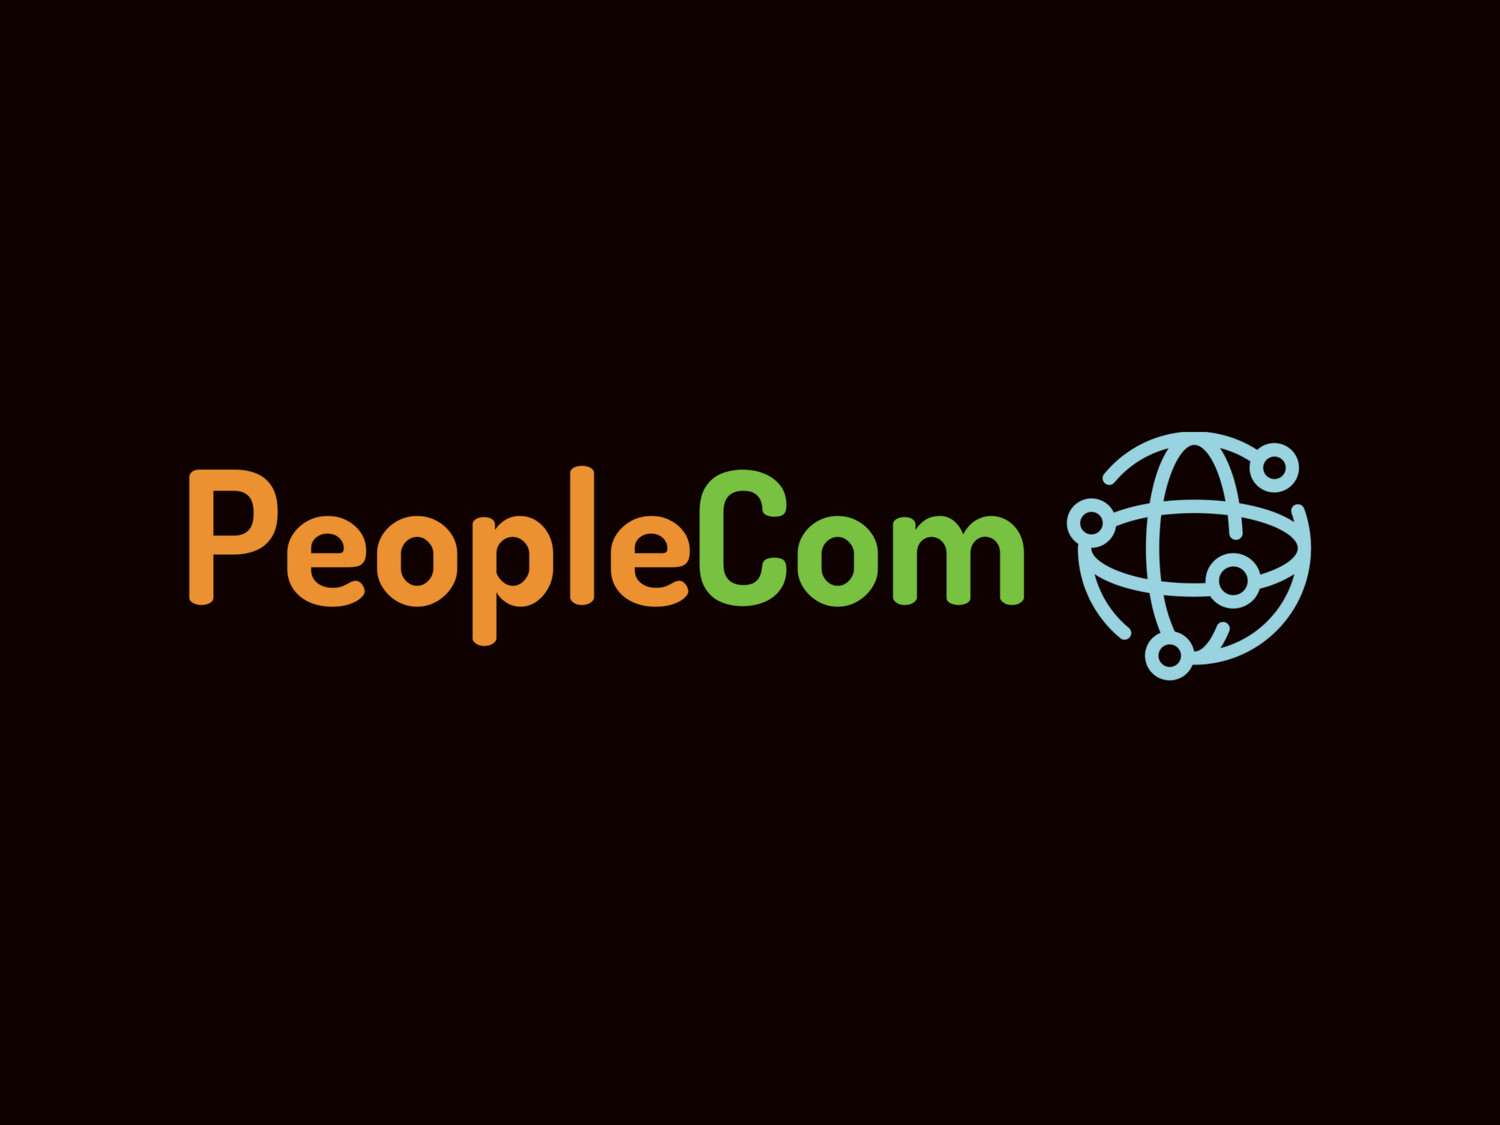 PeopleCom.com